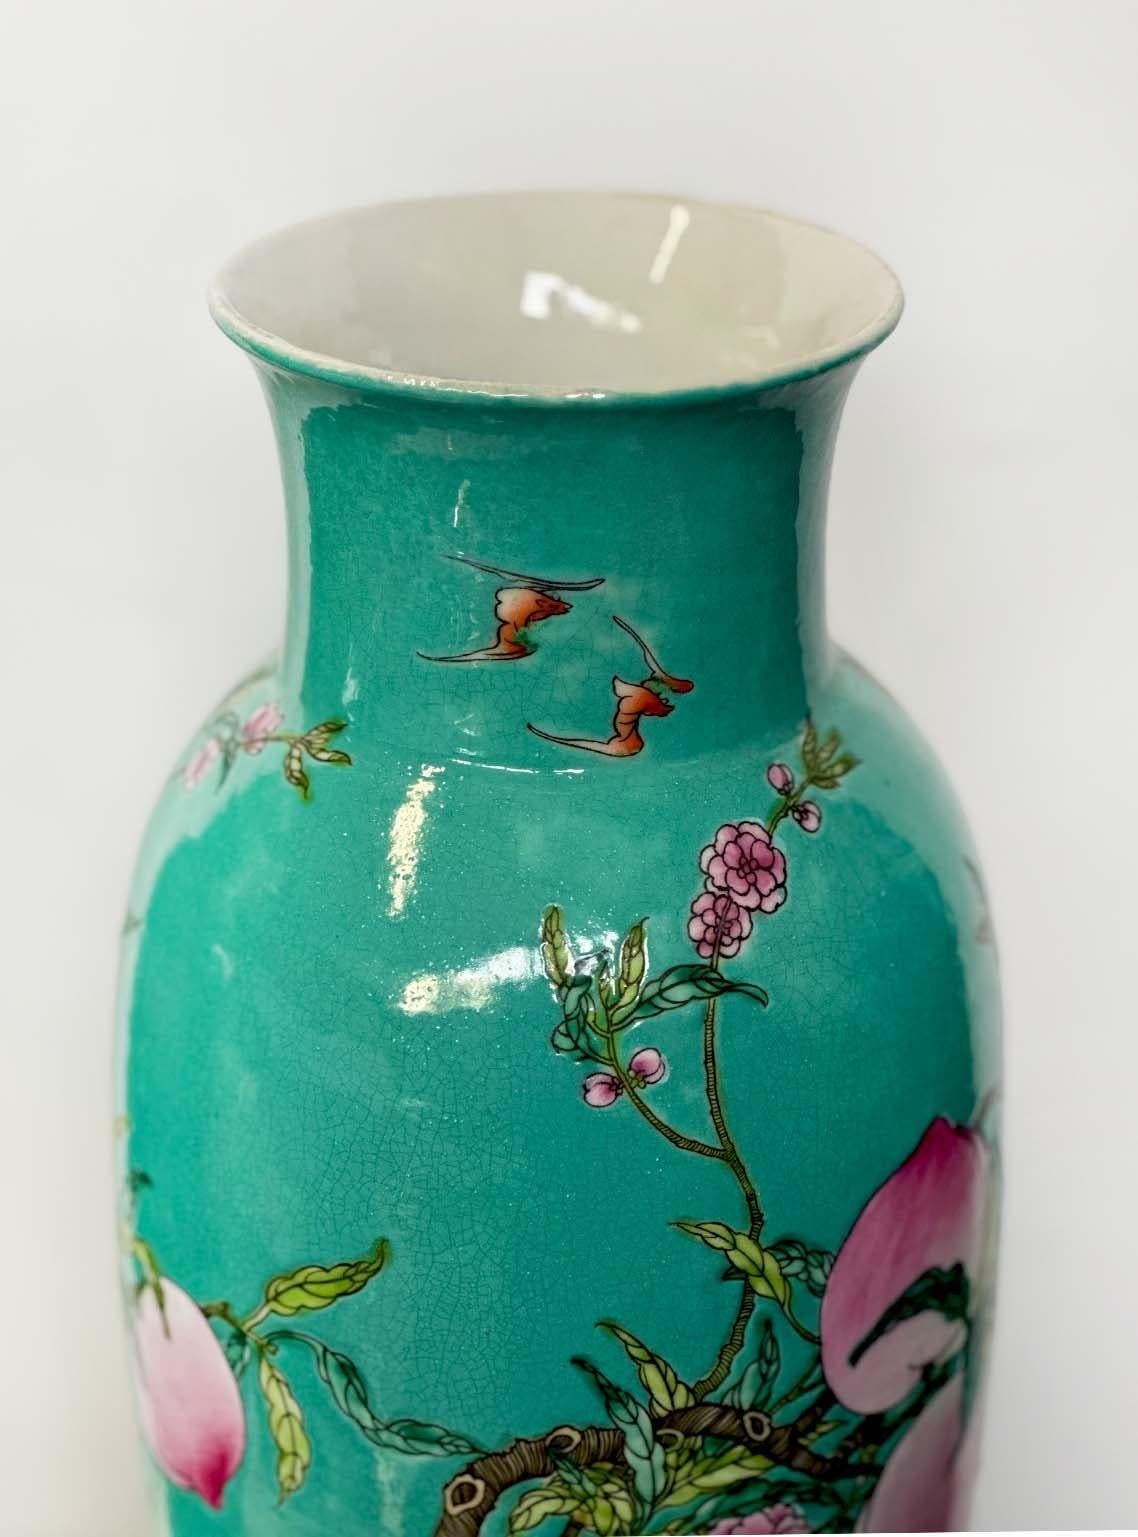 Paar chinesische Vasen aus türkisfarbenem Porzellan, jeweils mit vergoldetem Bronzesockel, hergestellt um 1900. Sie bestehen aus einer wunderschönen handgemalten Darstellung eines Pfirsichbaumzweigs mit vielen Früchten und